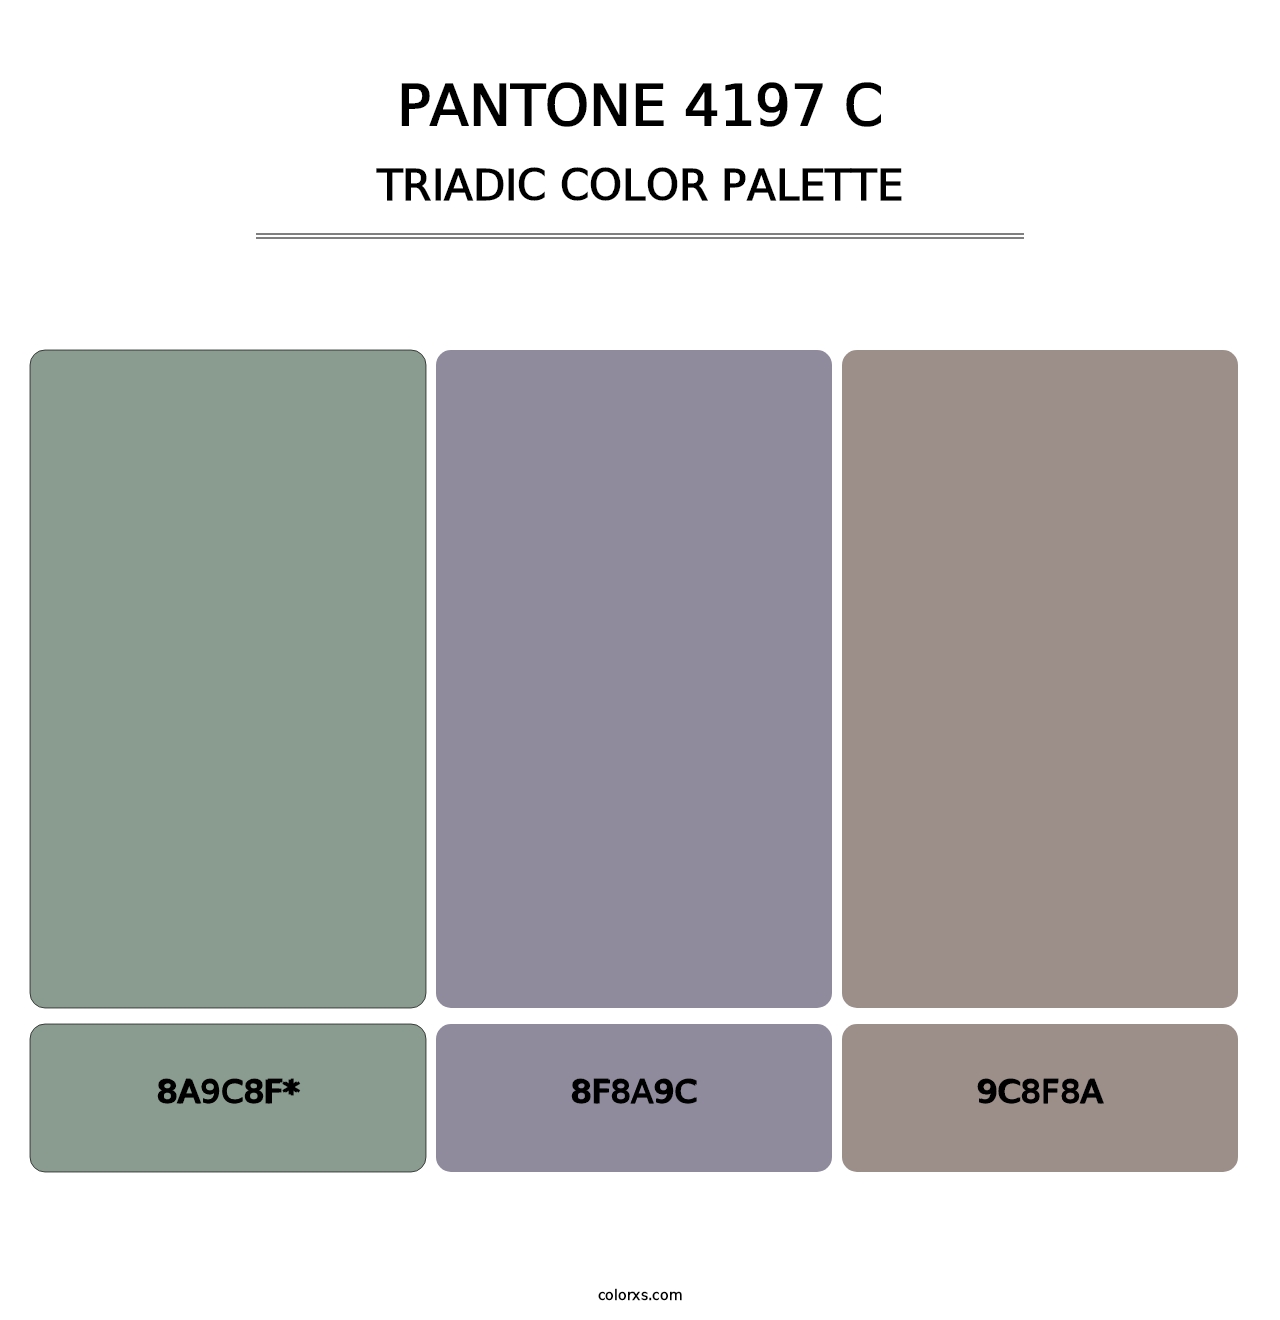 PANTONE 4197 C - Triadic Color Palette